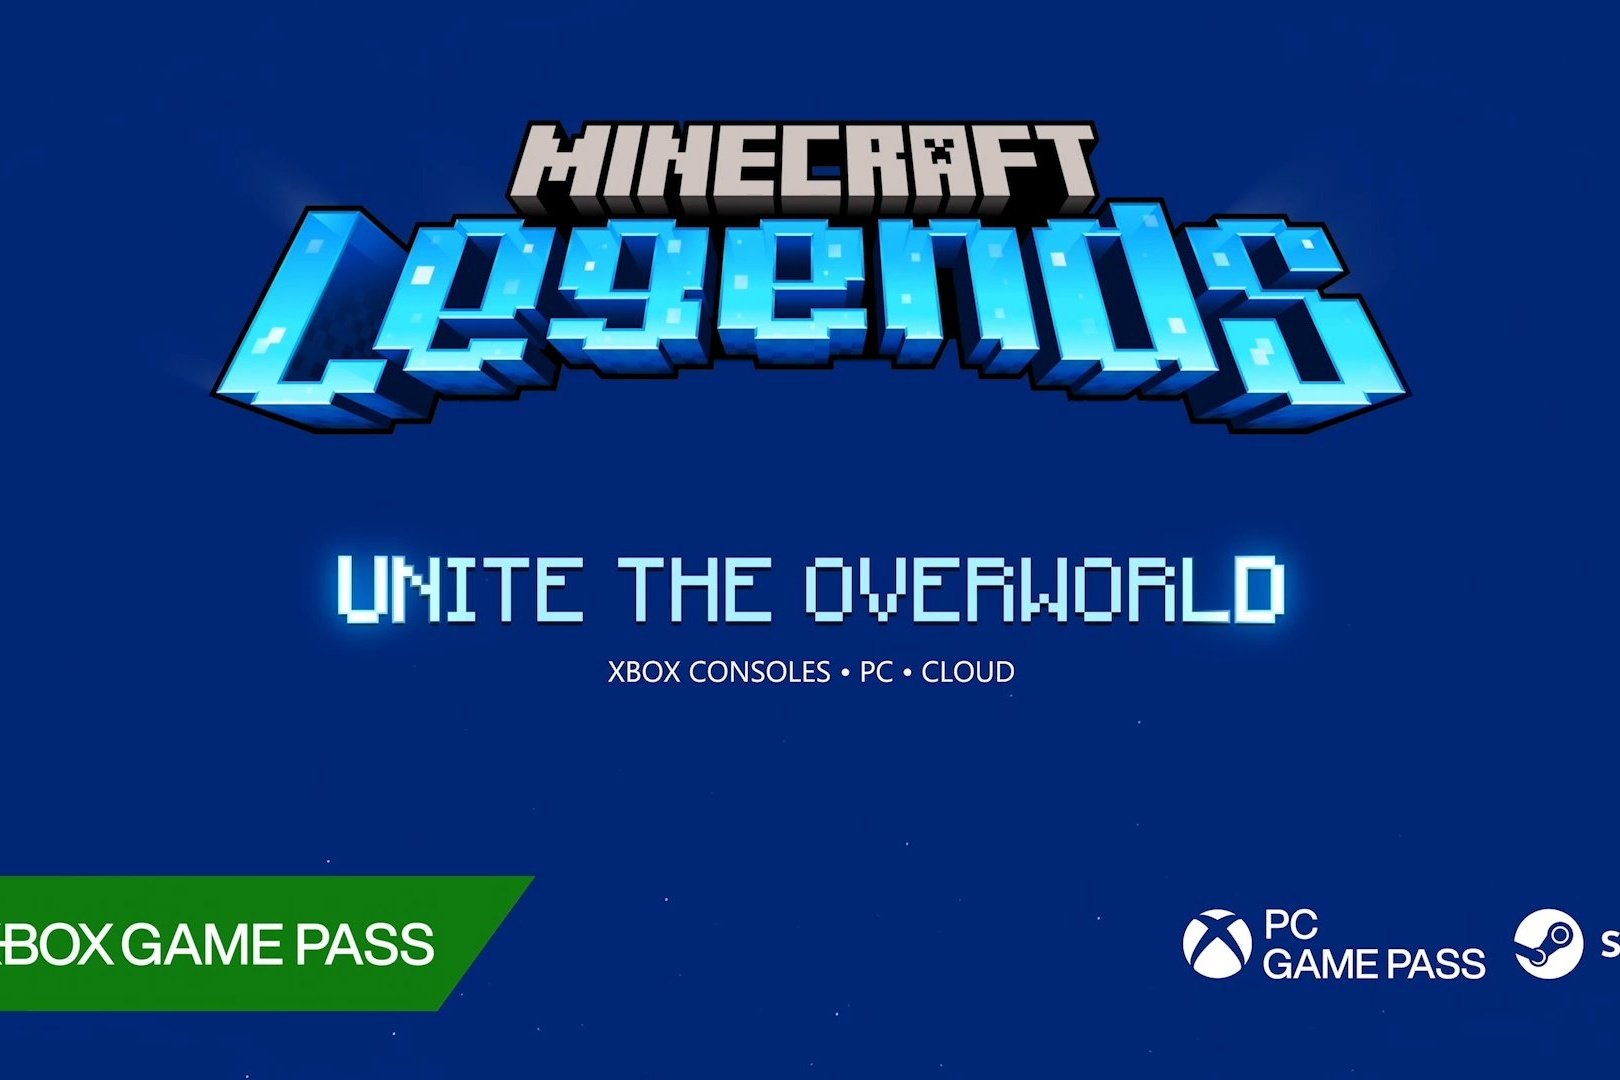 Apresentando Minecraft Legends, um jogo de estratégia e ação que